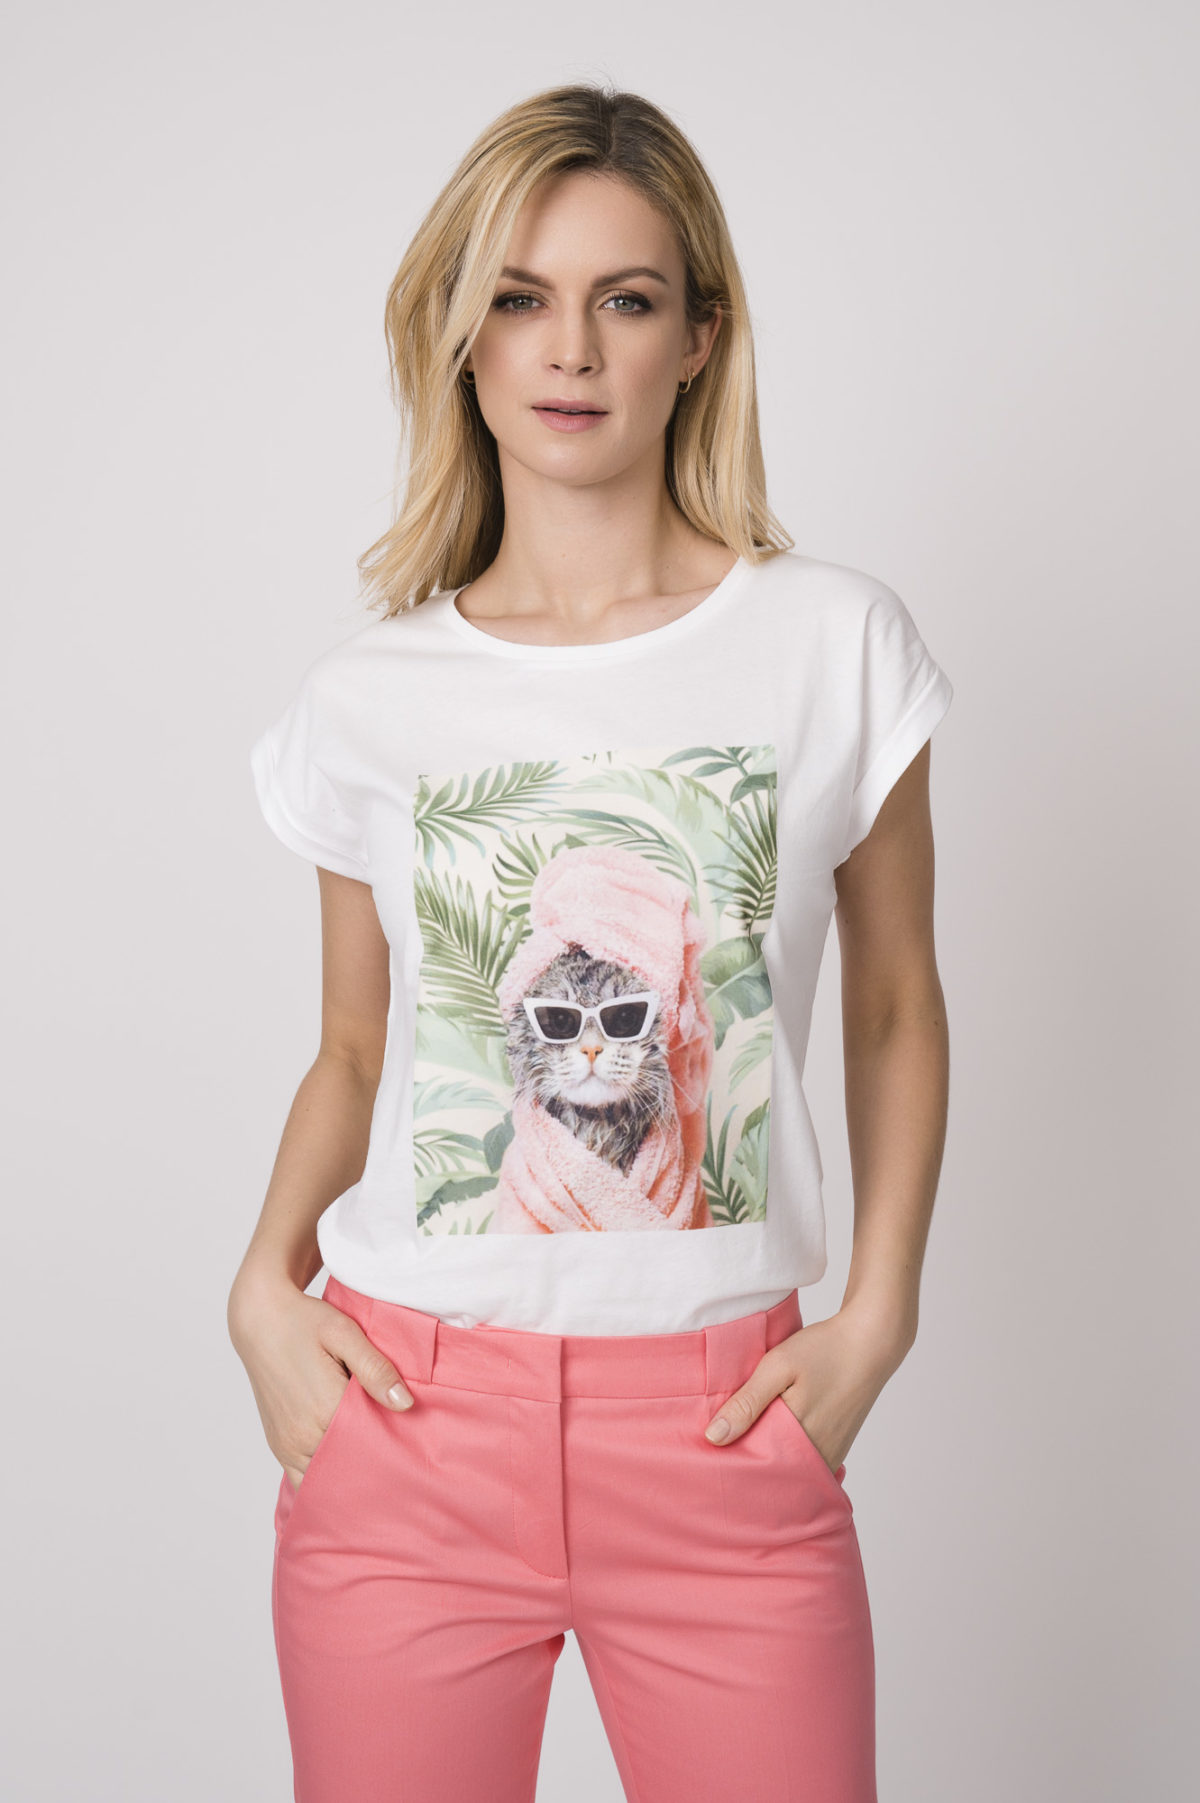 Shirt der Marke Romeo & Julieta, Hose der Marke Luisa Cerano